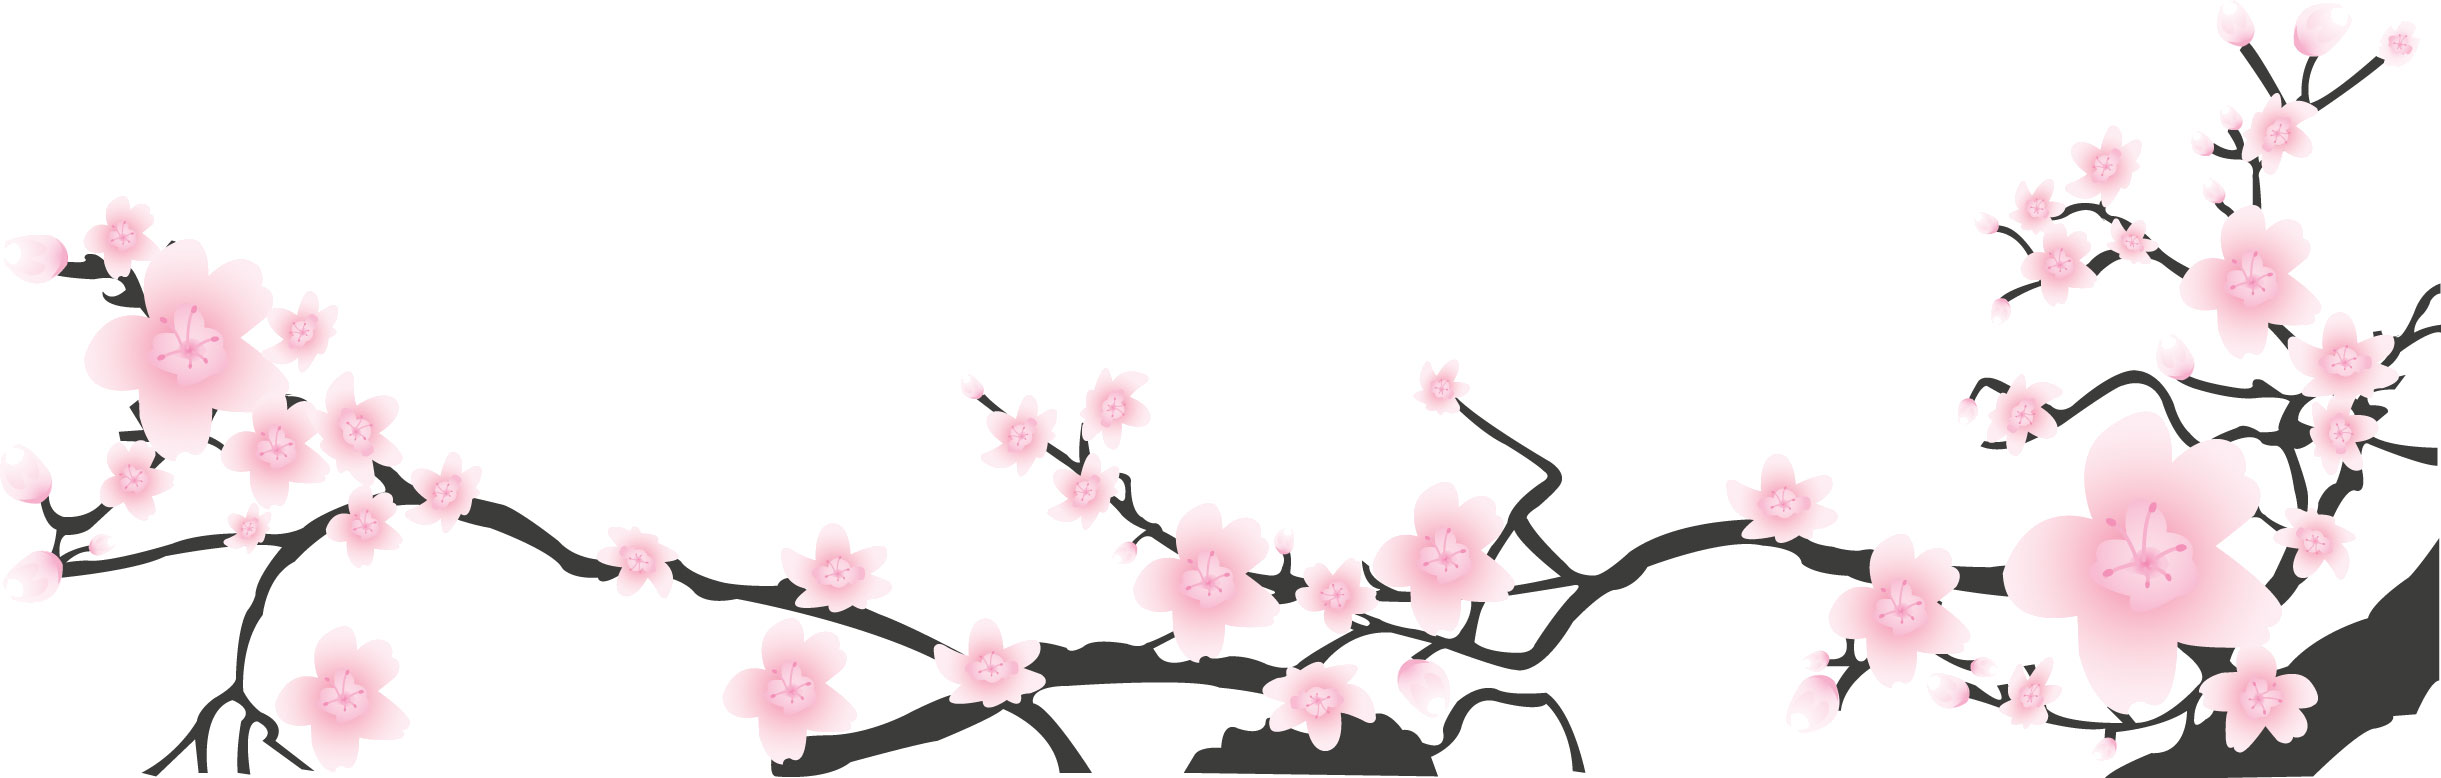 桜 さくら の画像 イラスト フリー素材 No 030 桜の木枝 ピンク